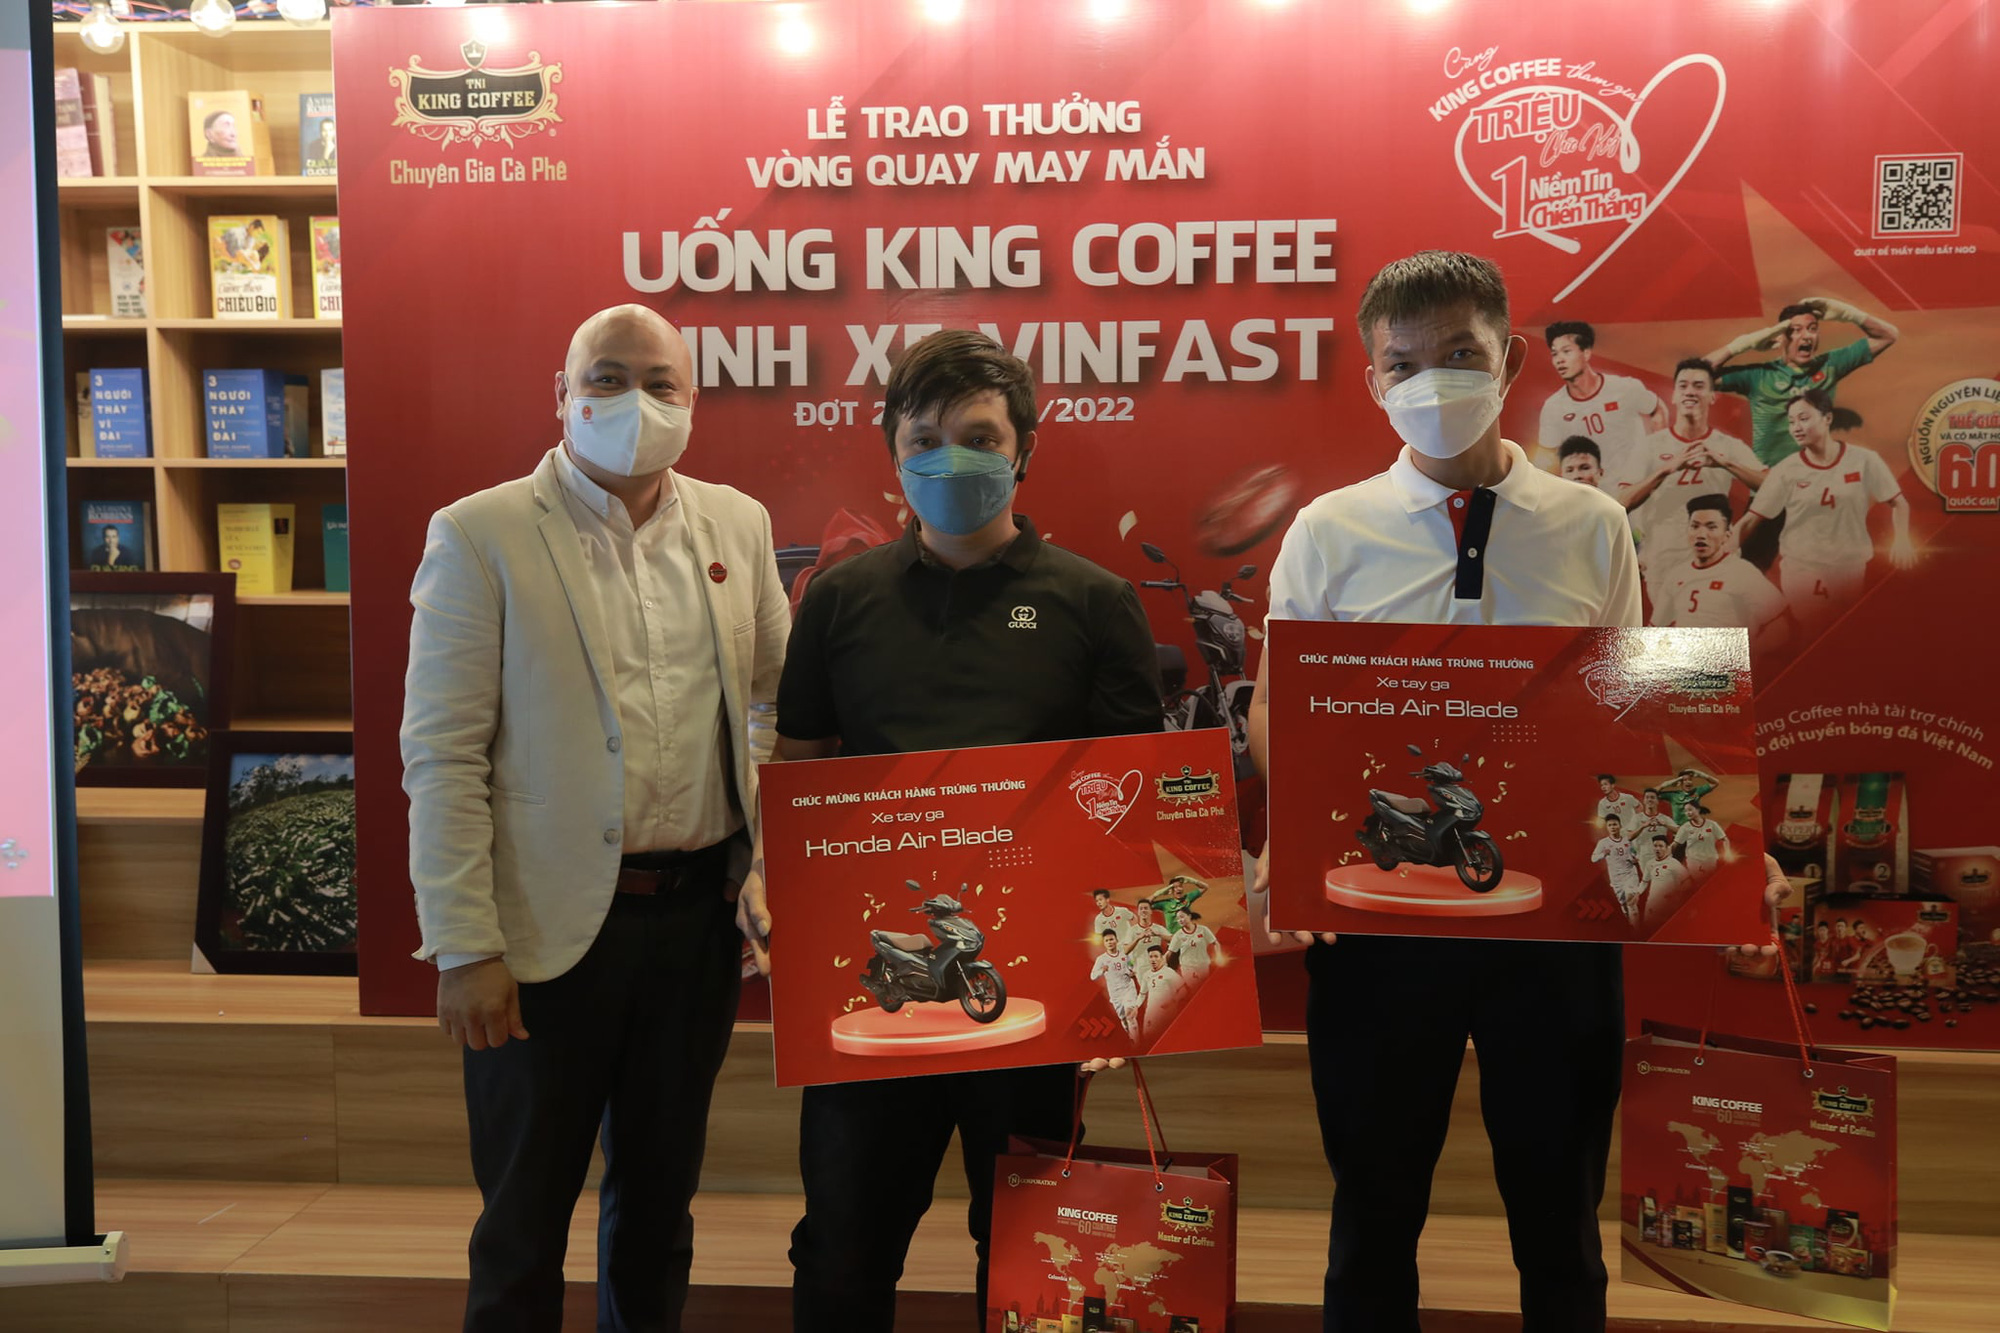 Khuyến mãi khủng của King Coffee “Triệu chữ ký – Một niềm tin chiến thắng”: dồn dập giải thưởng được trao - Ảnh 2.